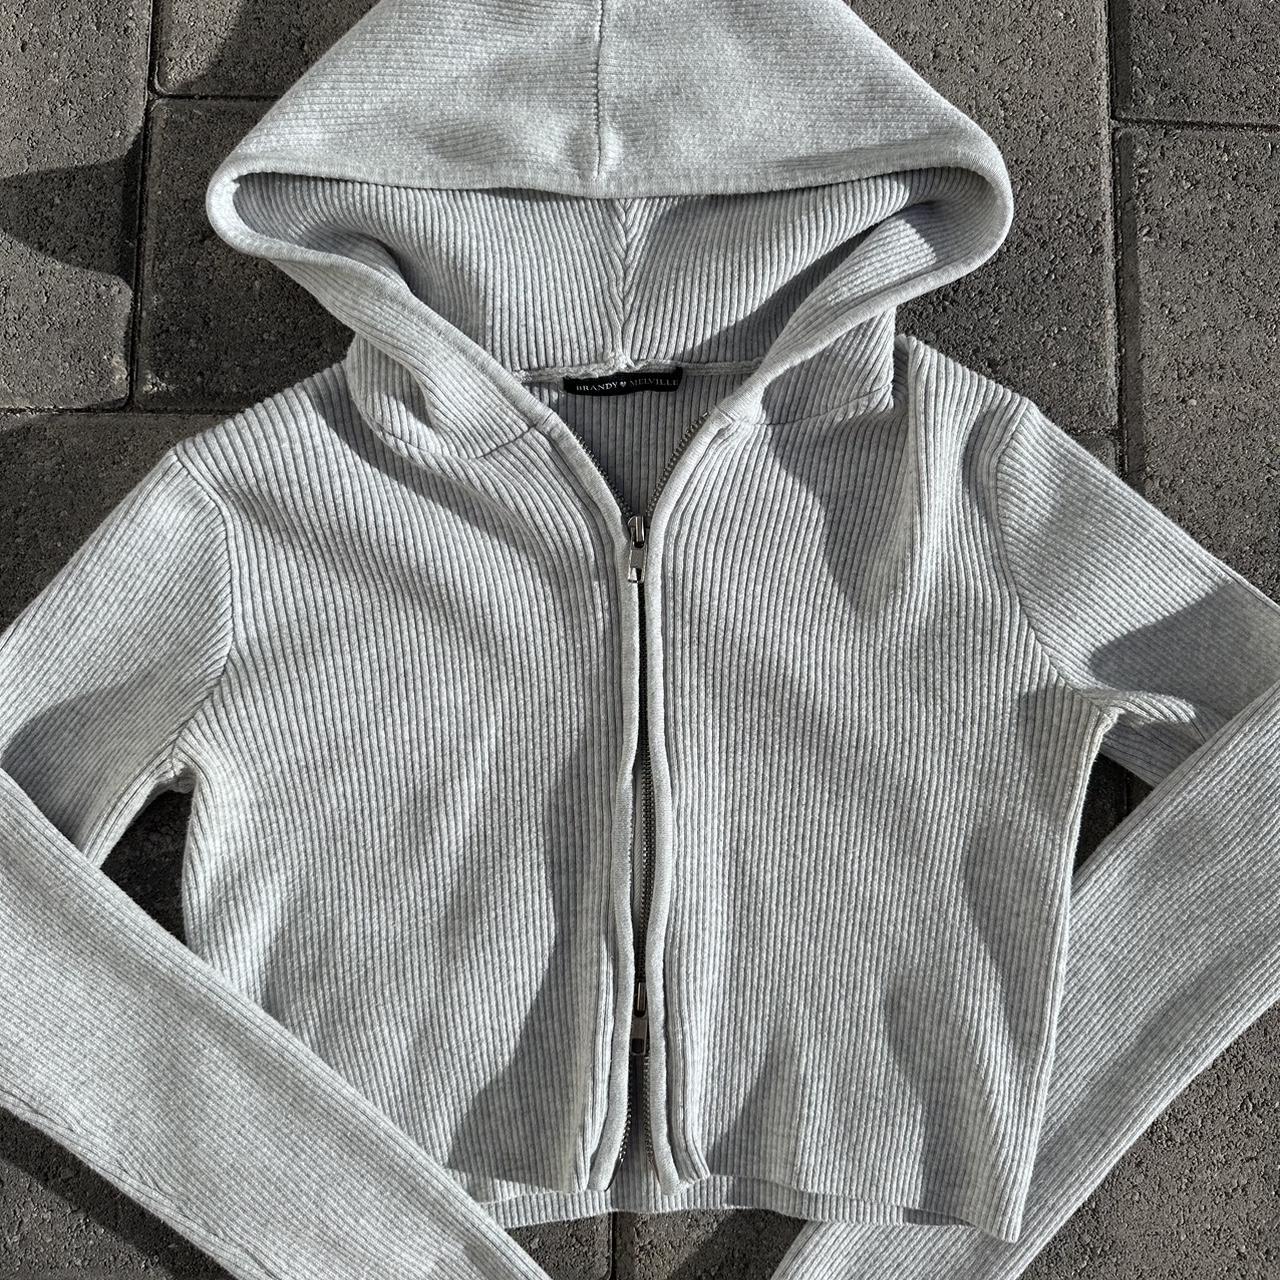 ARDEN~Brandy Melville zip hoodie in a heather grey! - Depop